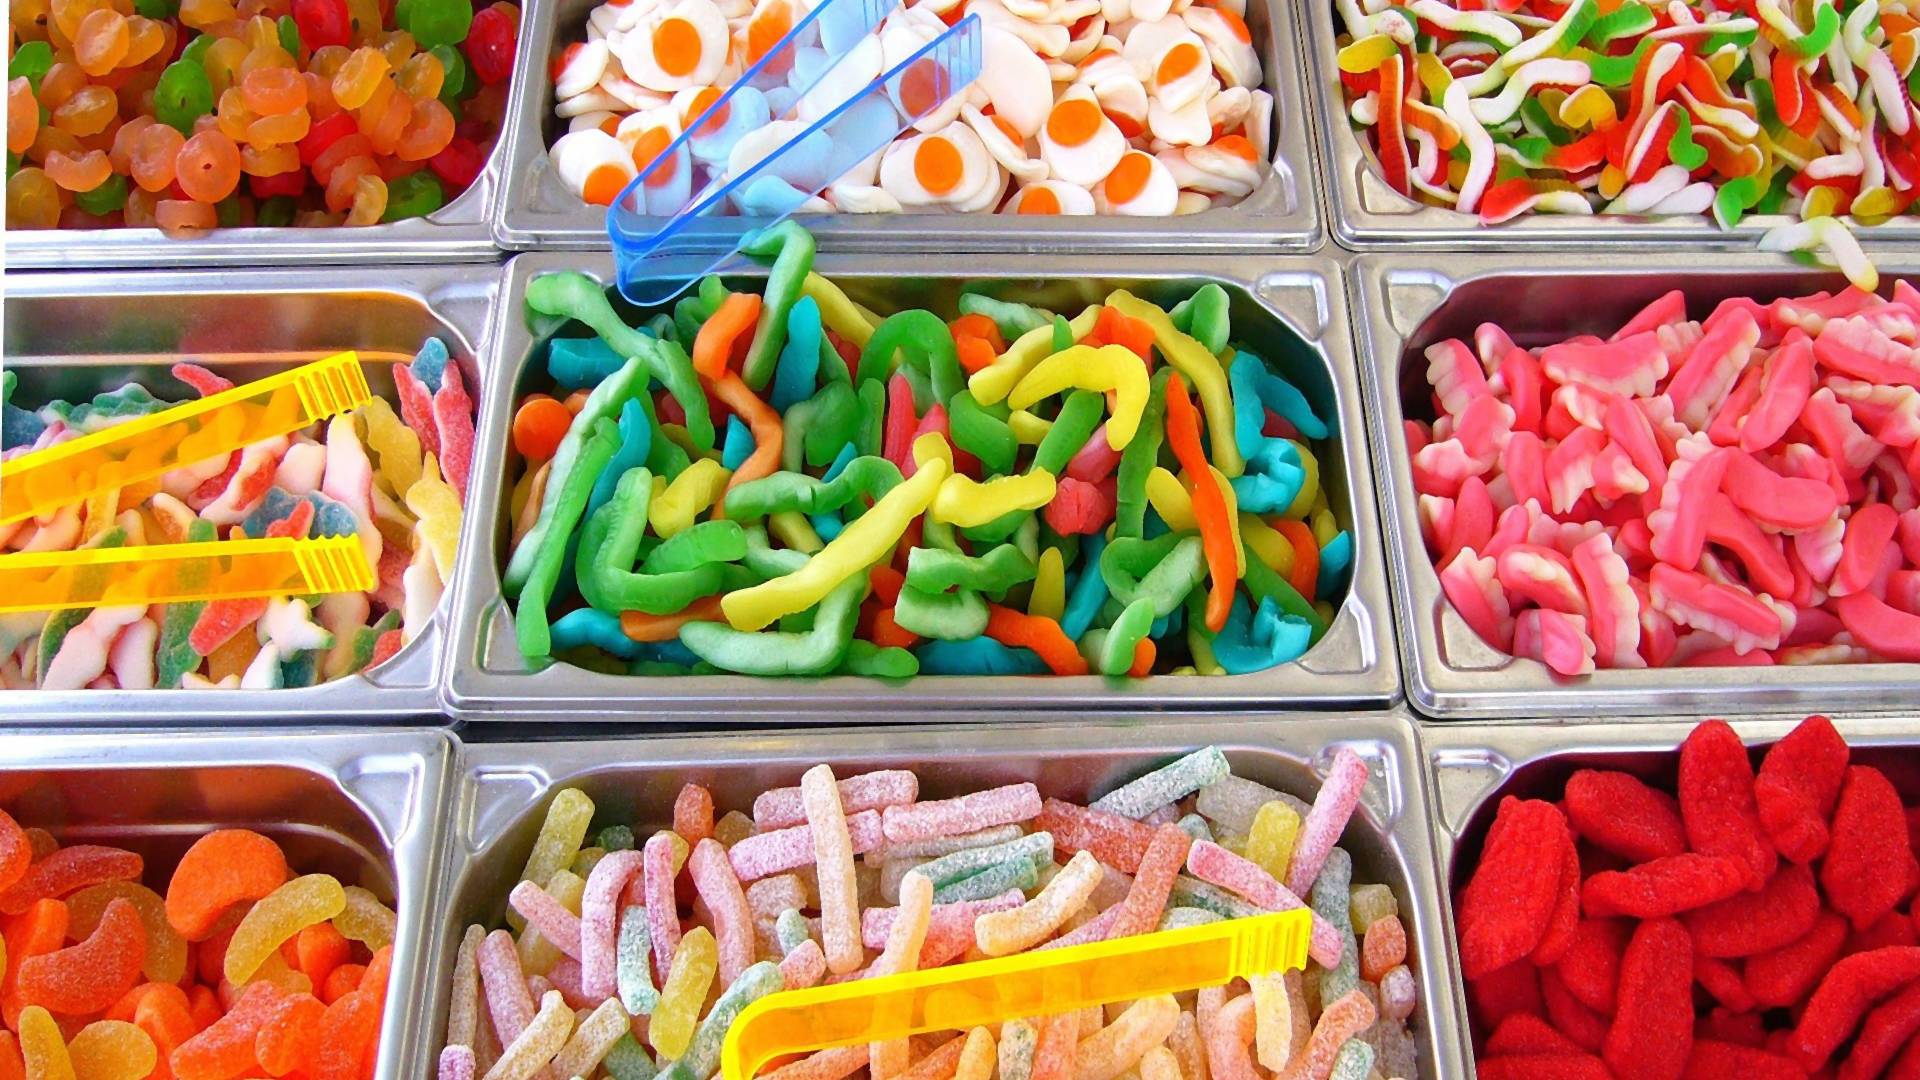 Práca snov pre milovníkov sladkostí: Firma ponúka rozprávkové peniaze za ochutnávanie cukroviniek